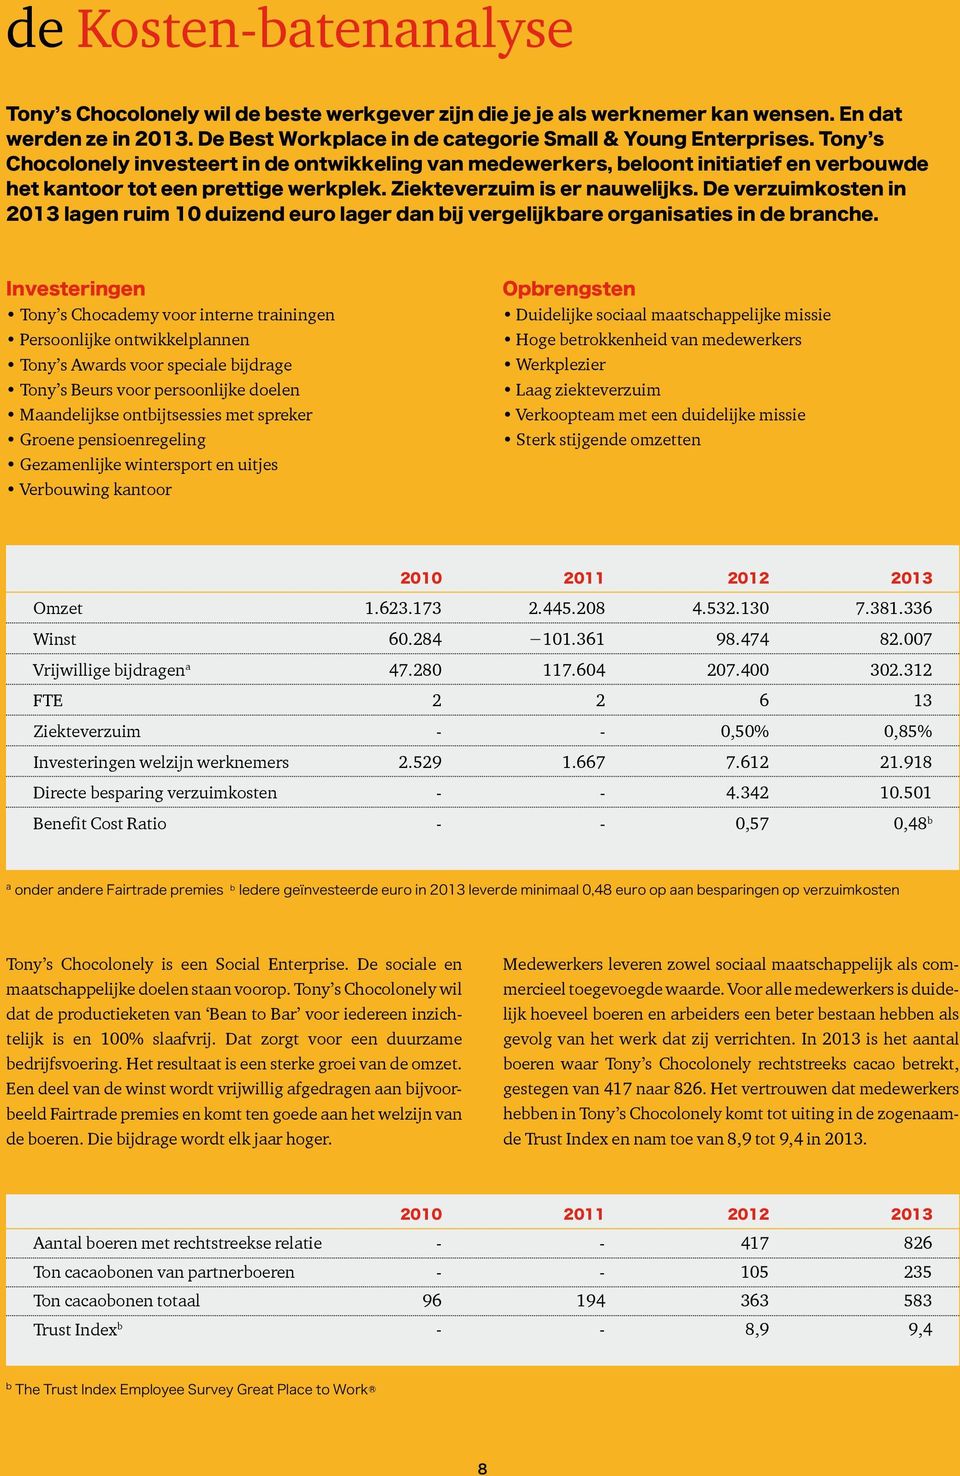 De verzuimkosten in 2013 lagen ruim 10 duizend euro lager dan bij vergelijkbare organisaties in de branche.